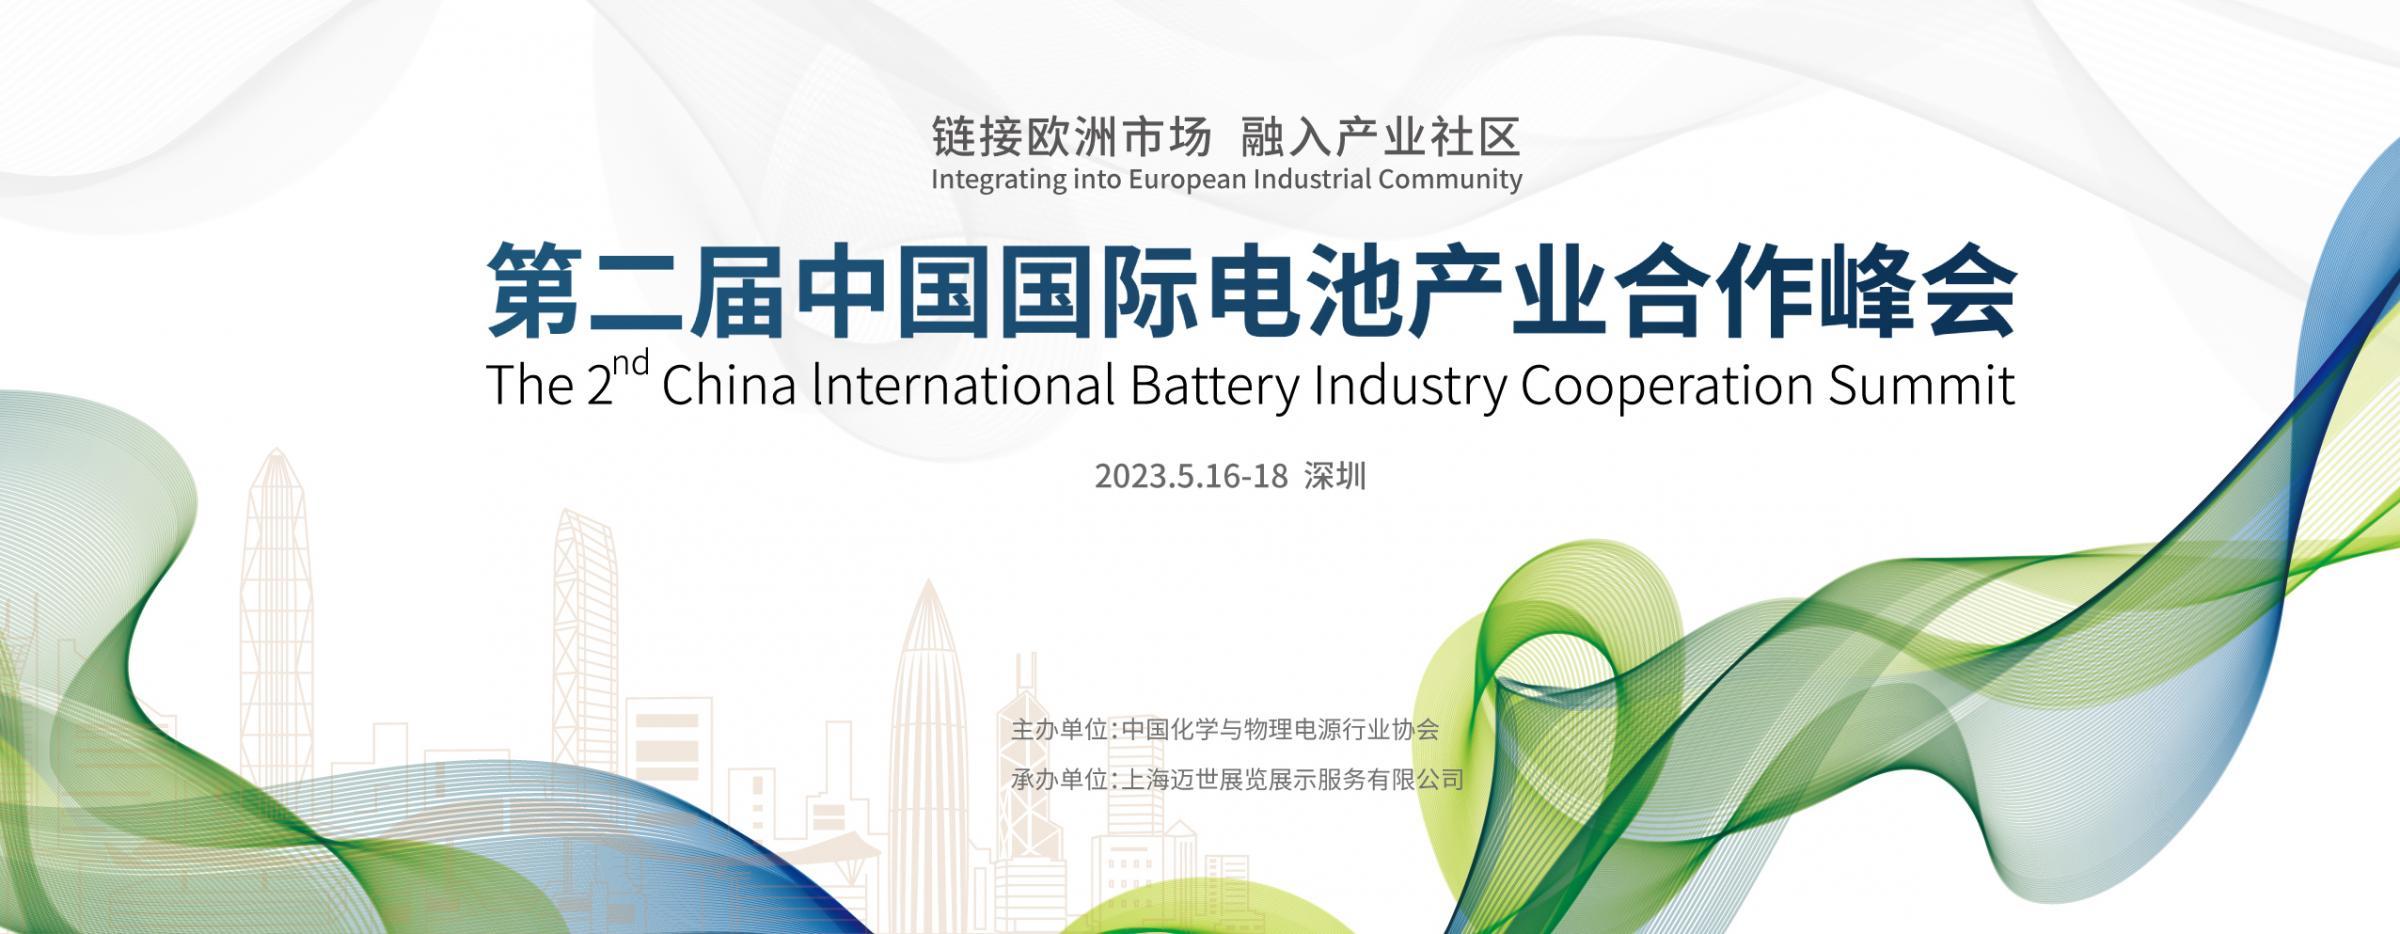 第二届中国国际电池产业合作峰会